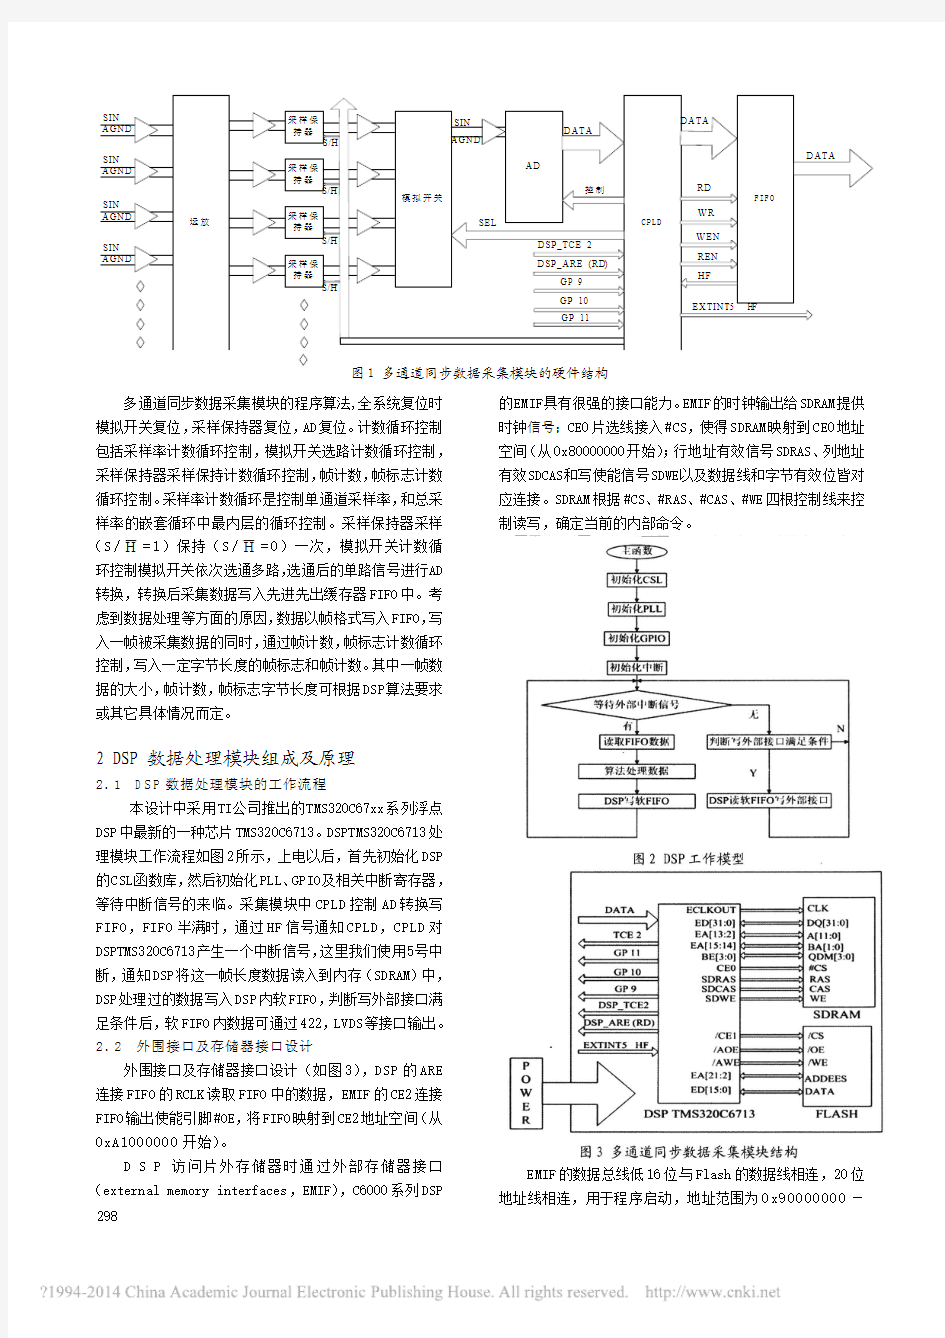 多通道同步数据采集与处理系统的设计与实现_王浩